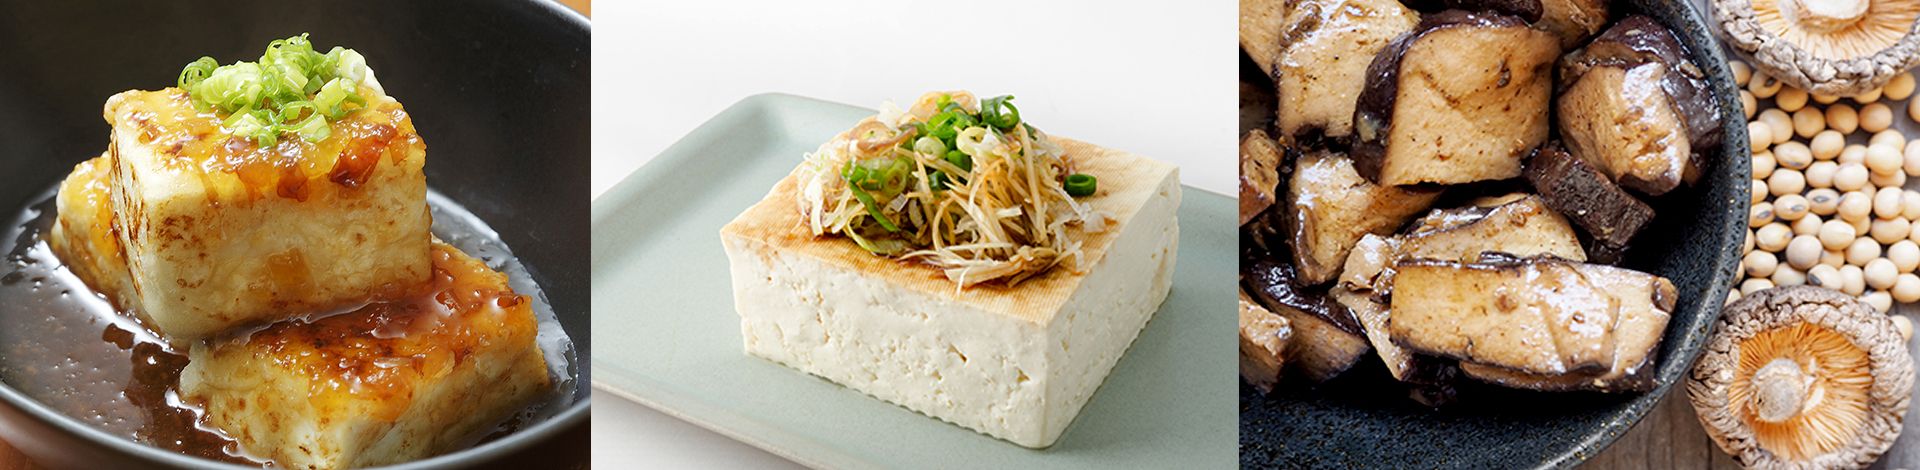 Macchina per la pressatura della muffa di tofu, Macchina per la pressatura del tofu, macchina per la pressatura e la formatura del tofu, macchina per alimenti